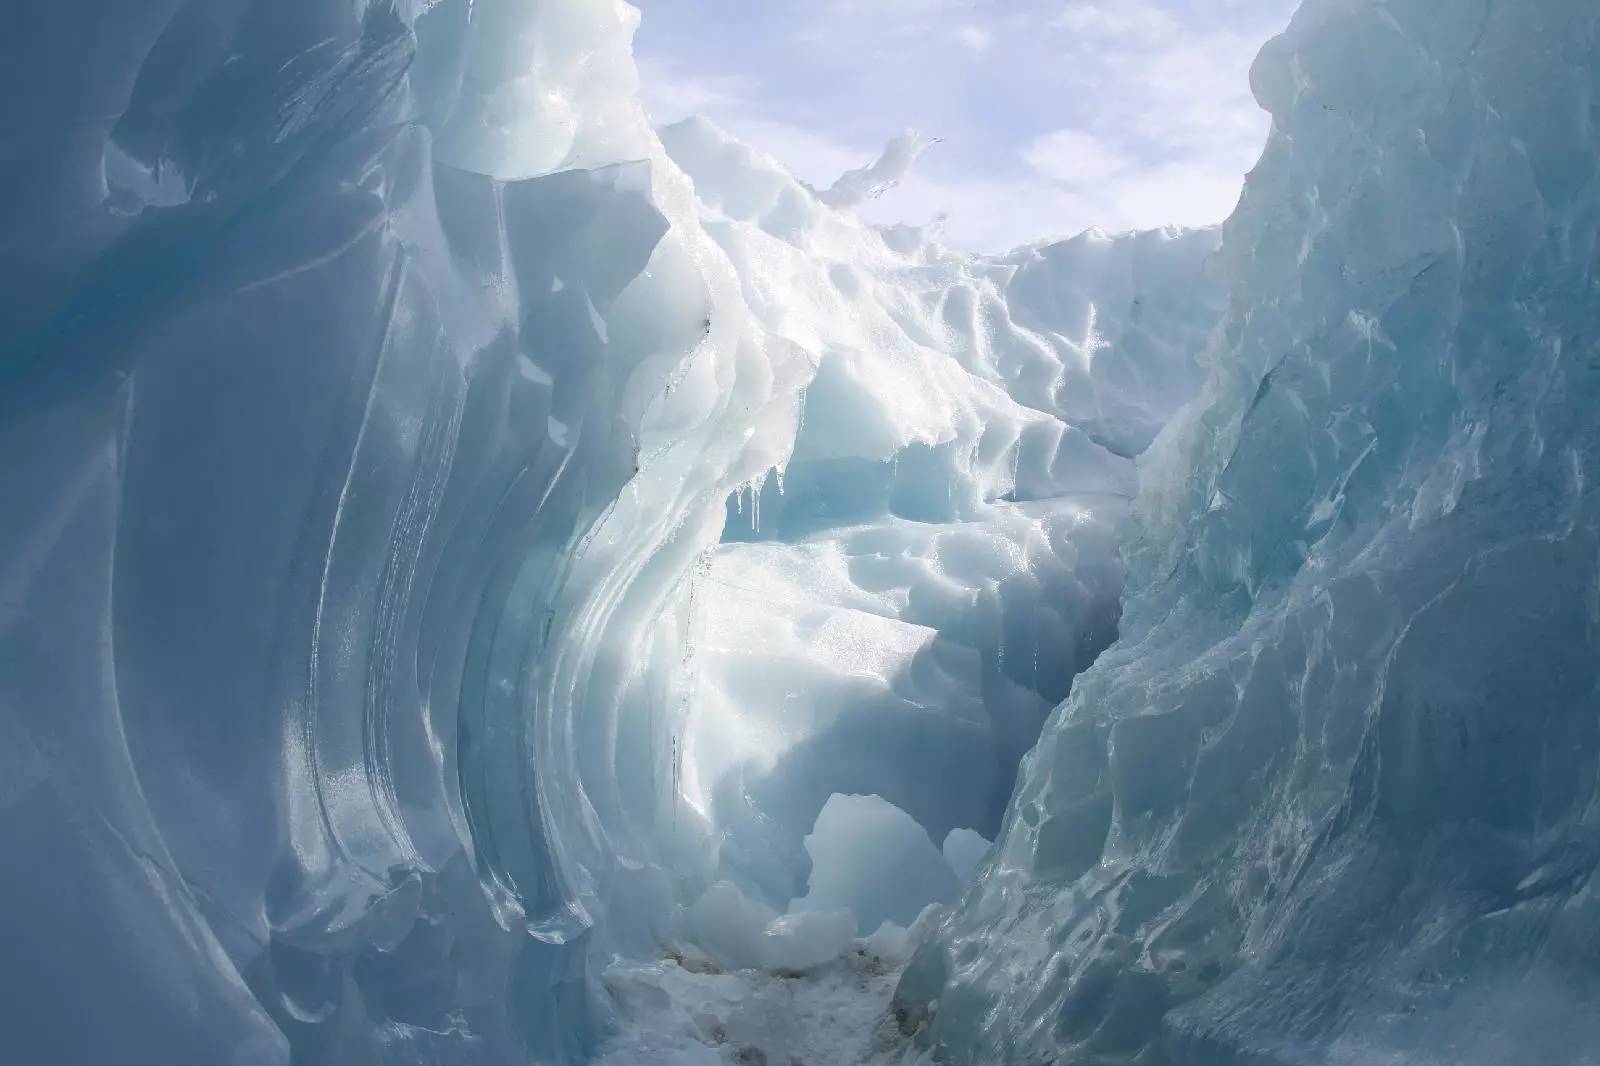 南极大陆冰溶洞探险视频首次公布-第一人称视